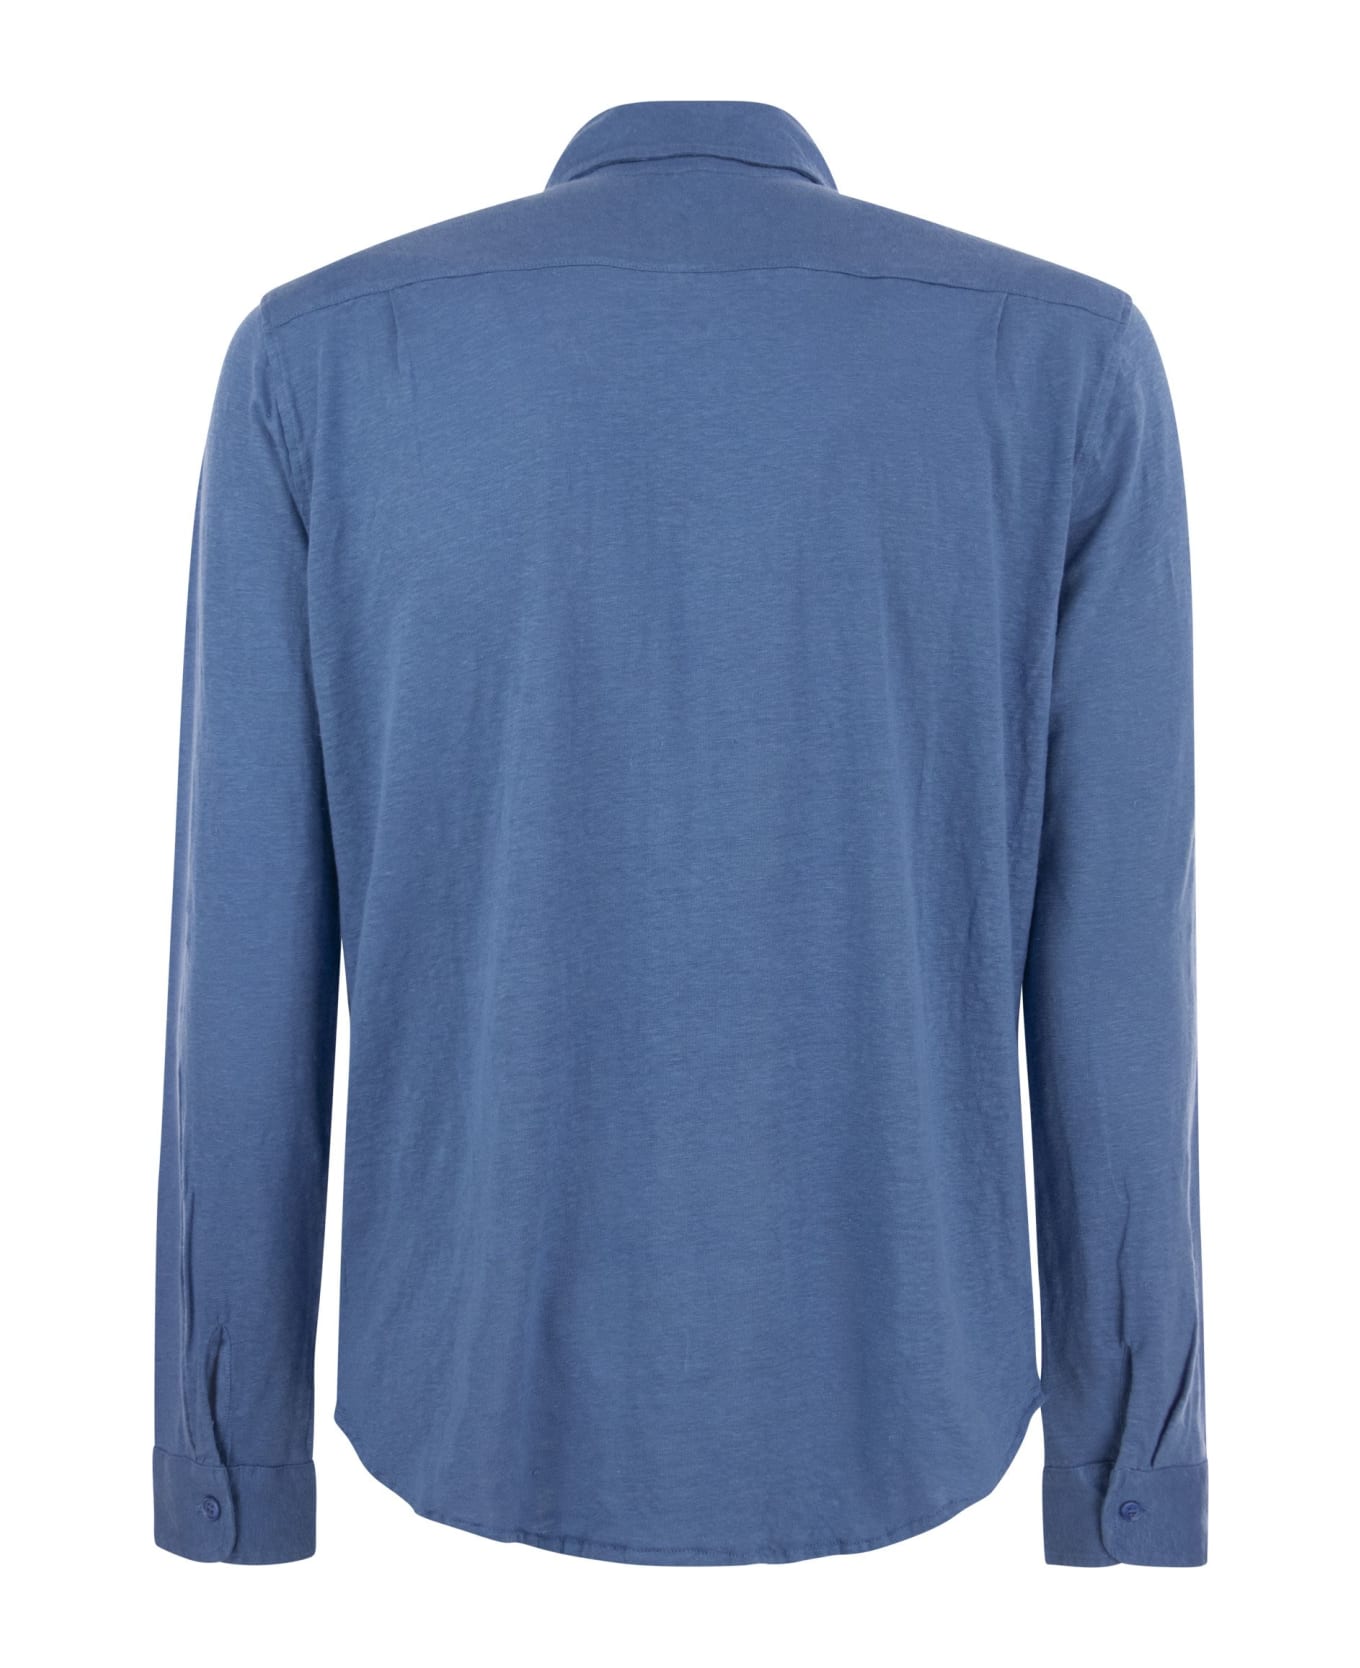 Majestic Filatures Linen Long-sleeved Shirt - Light Blue シャツ